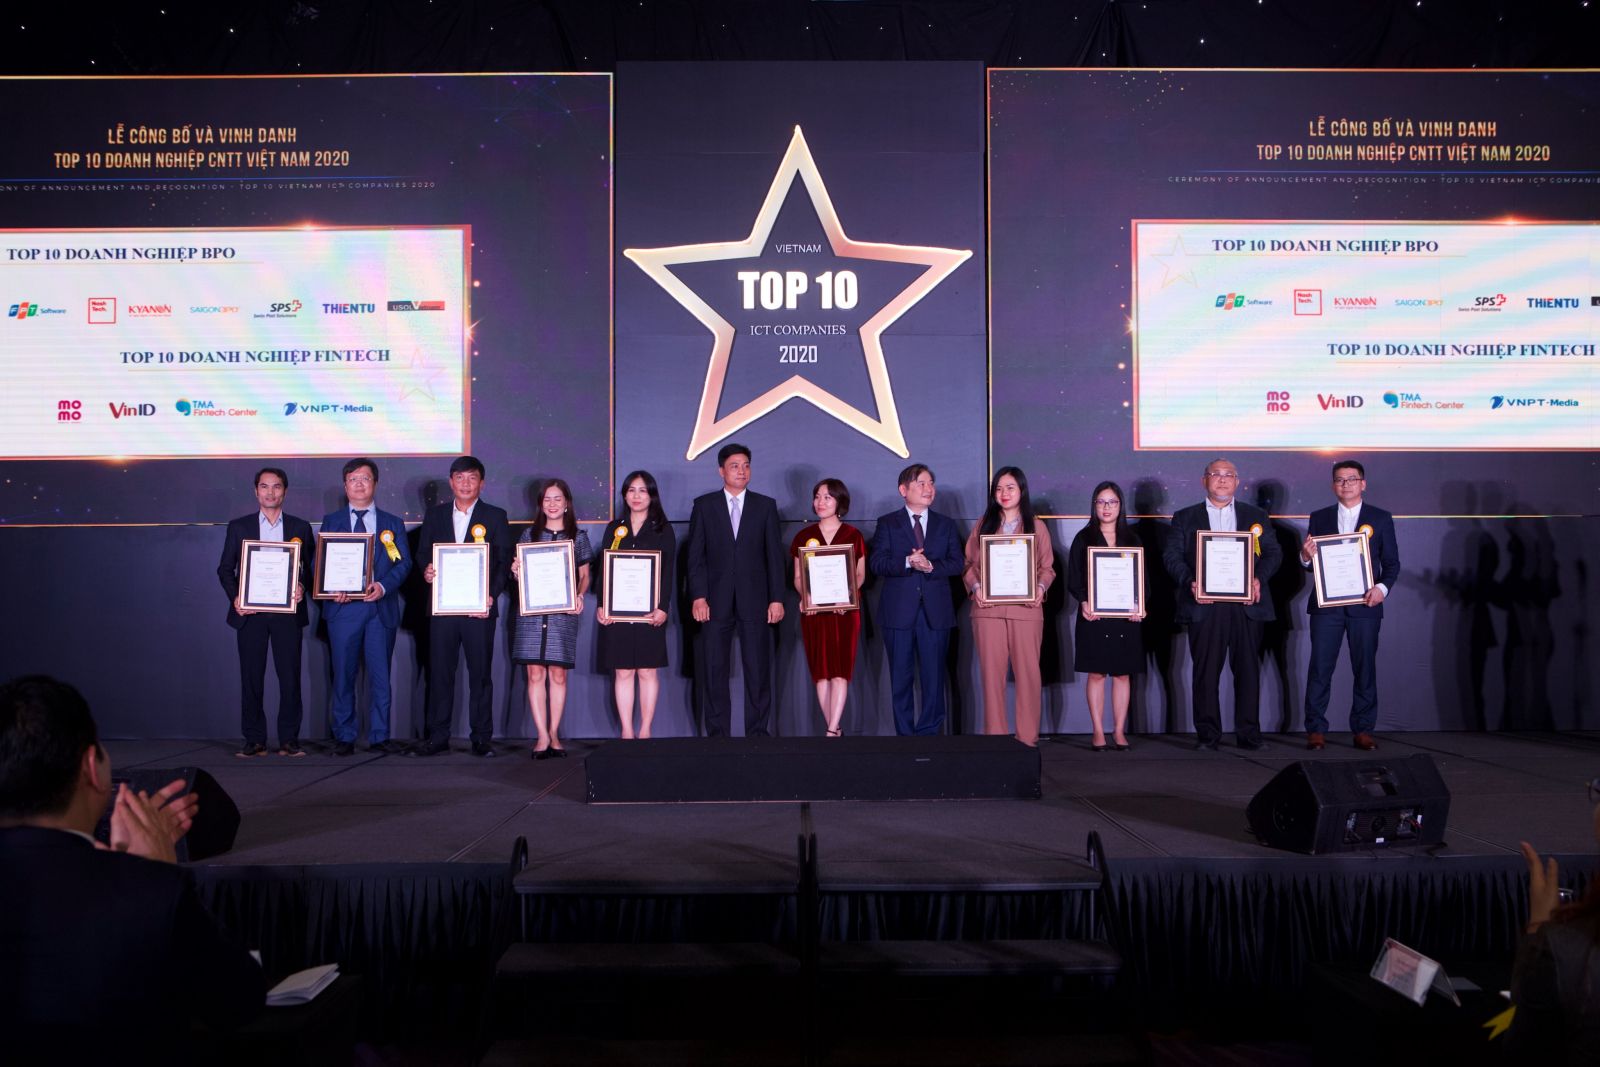 Lễ công bố và vinh danh top 10 doanh nghiệp CNTT Việt Nam 2020